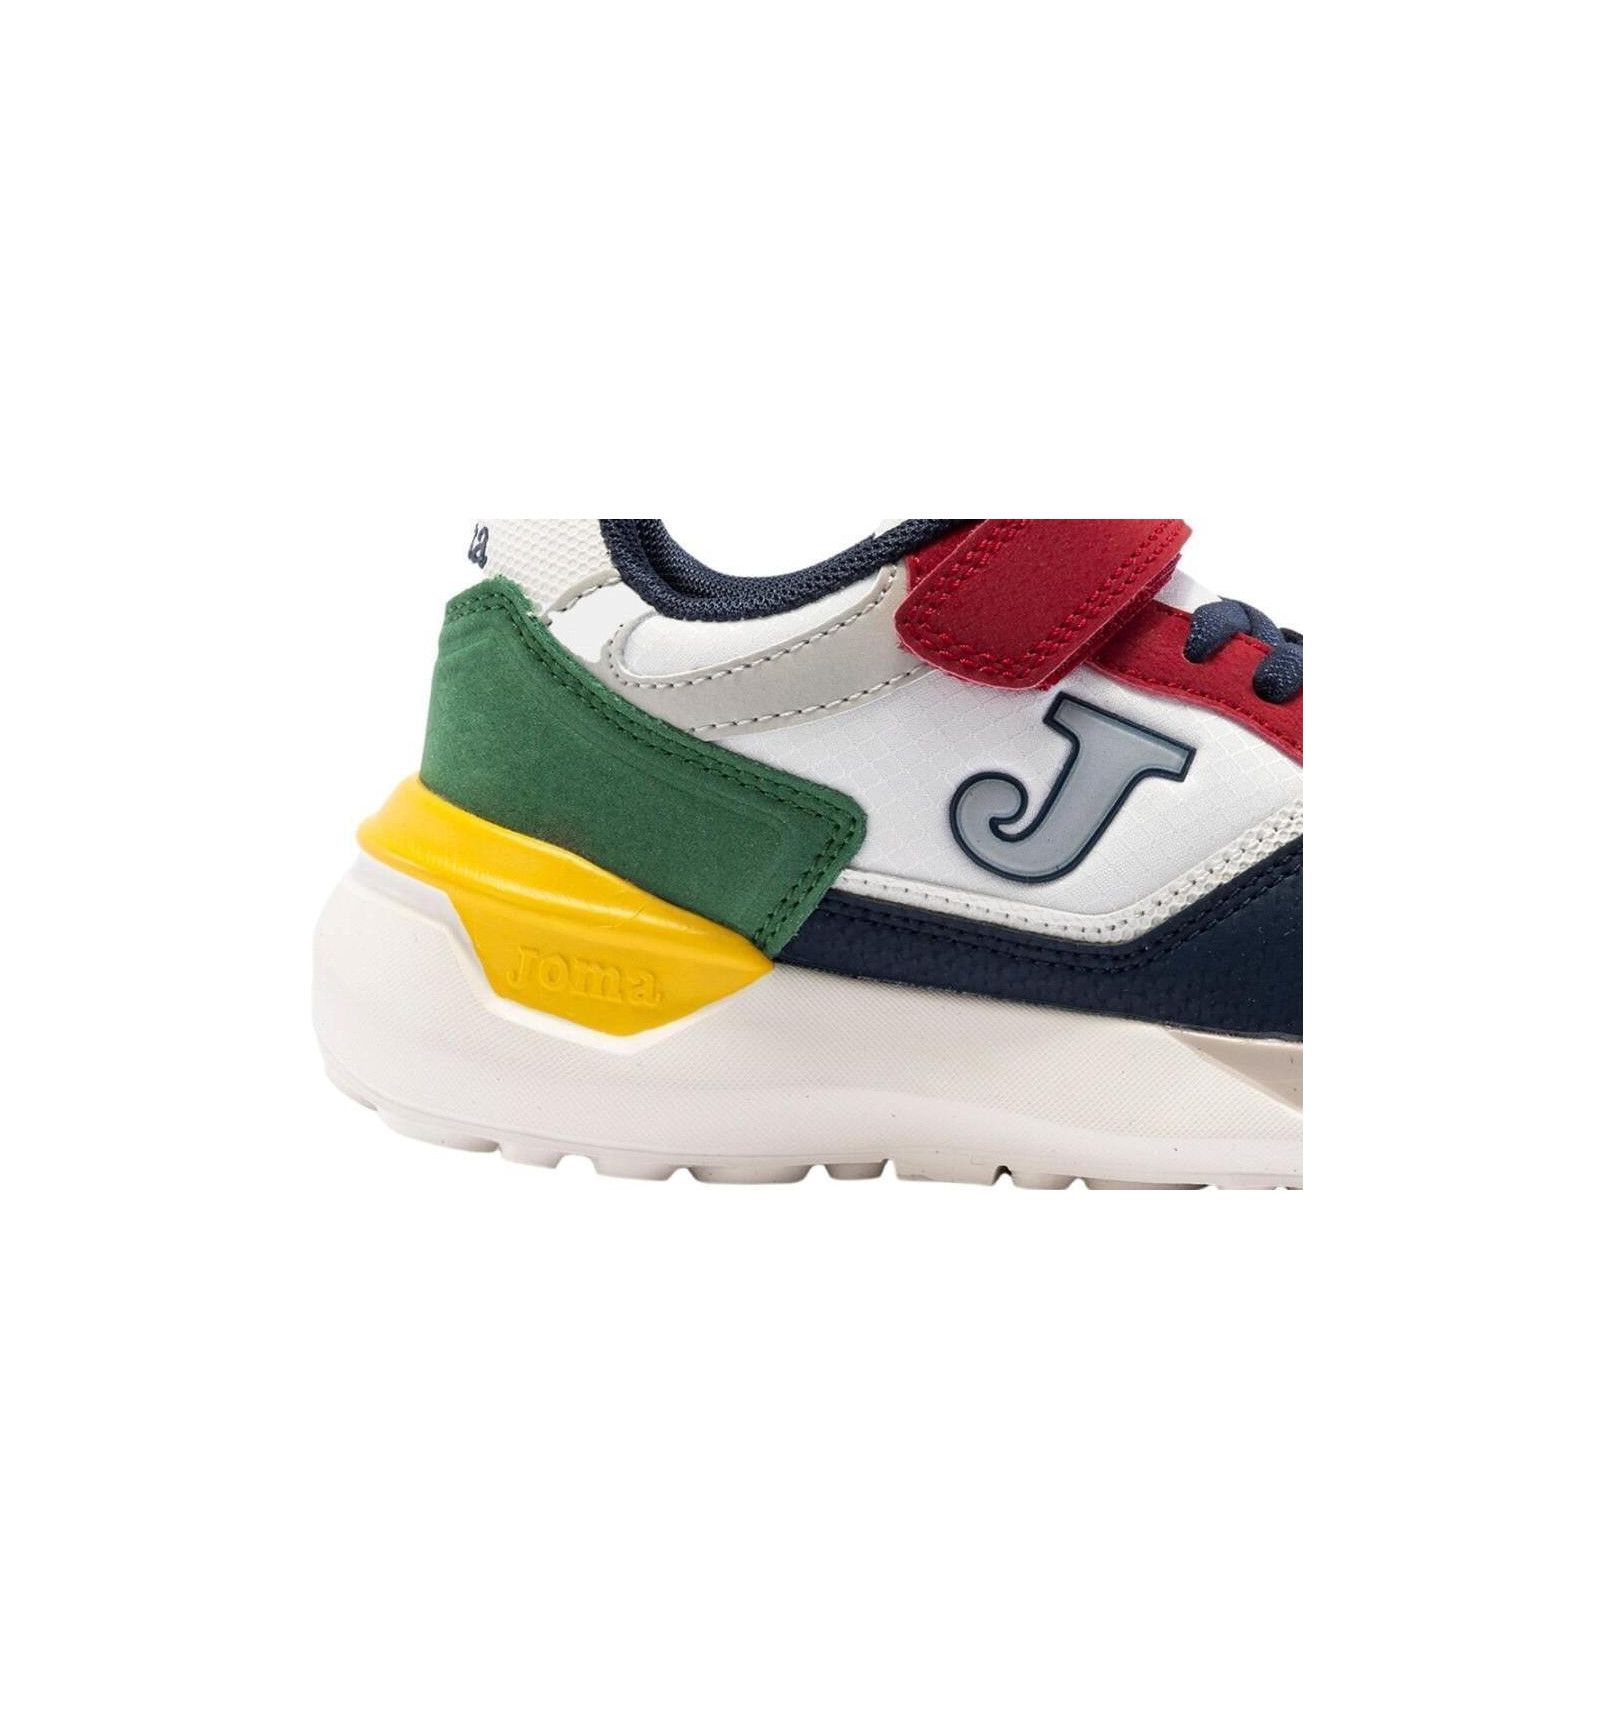 Zapatillas deportivas para niños, marca Joma, en multicolor. Joma